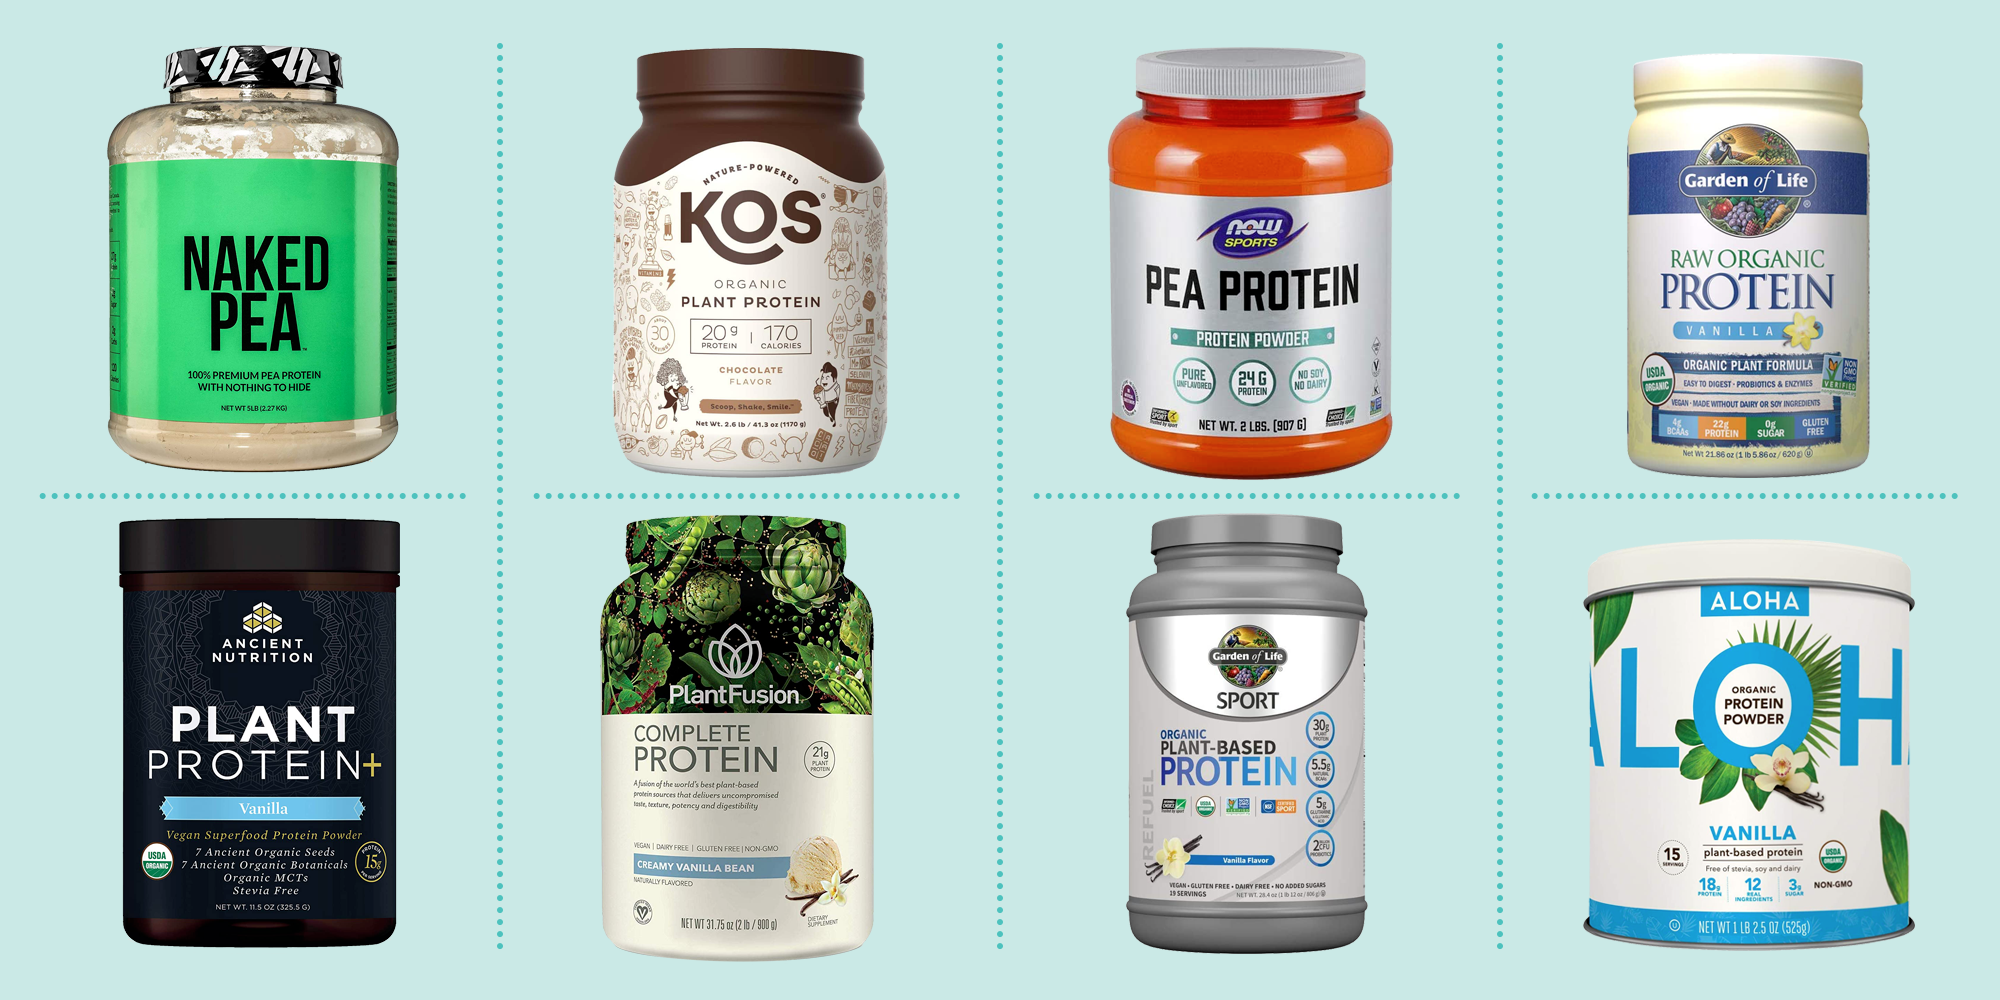 protein powder brands by market share